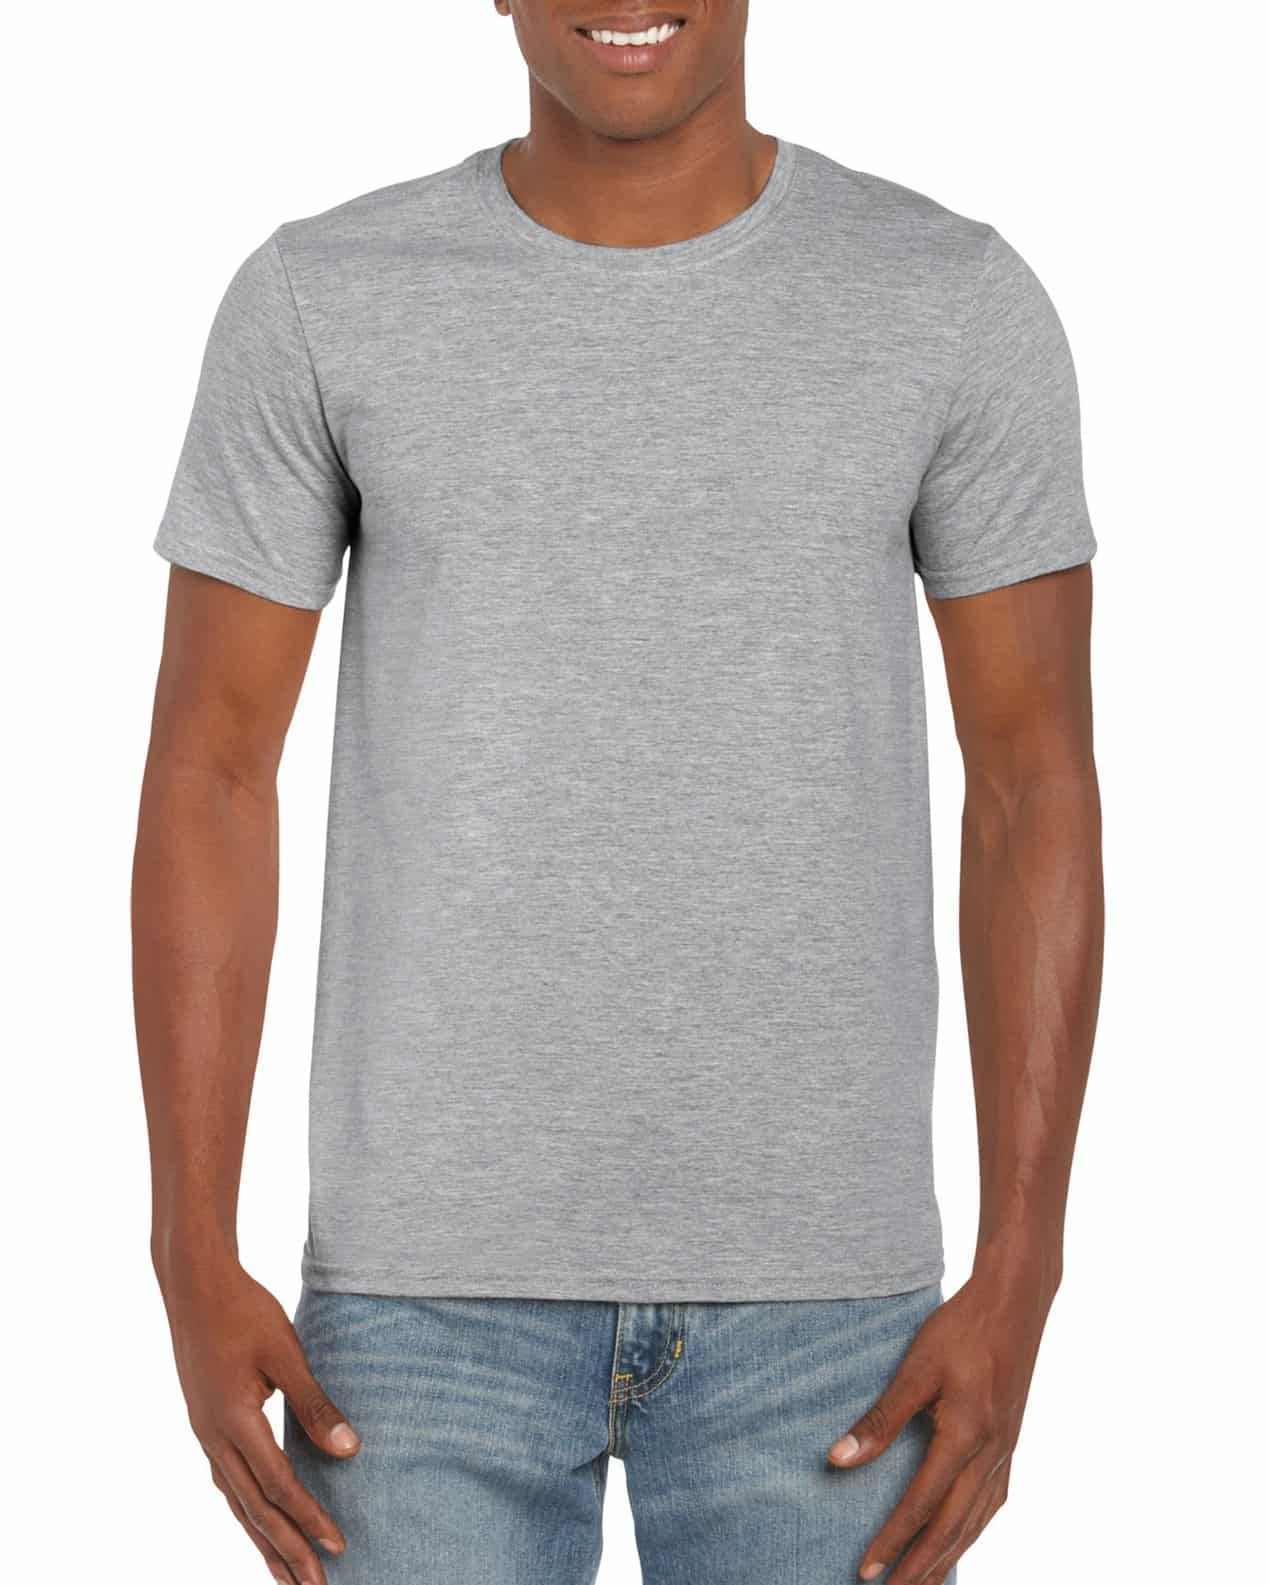 rizo fibra Lago taupo Camiseta algodón peinado gris jaspe | PstyleC